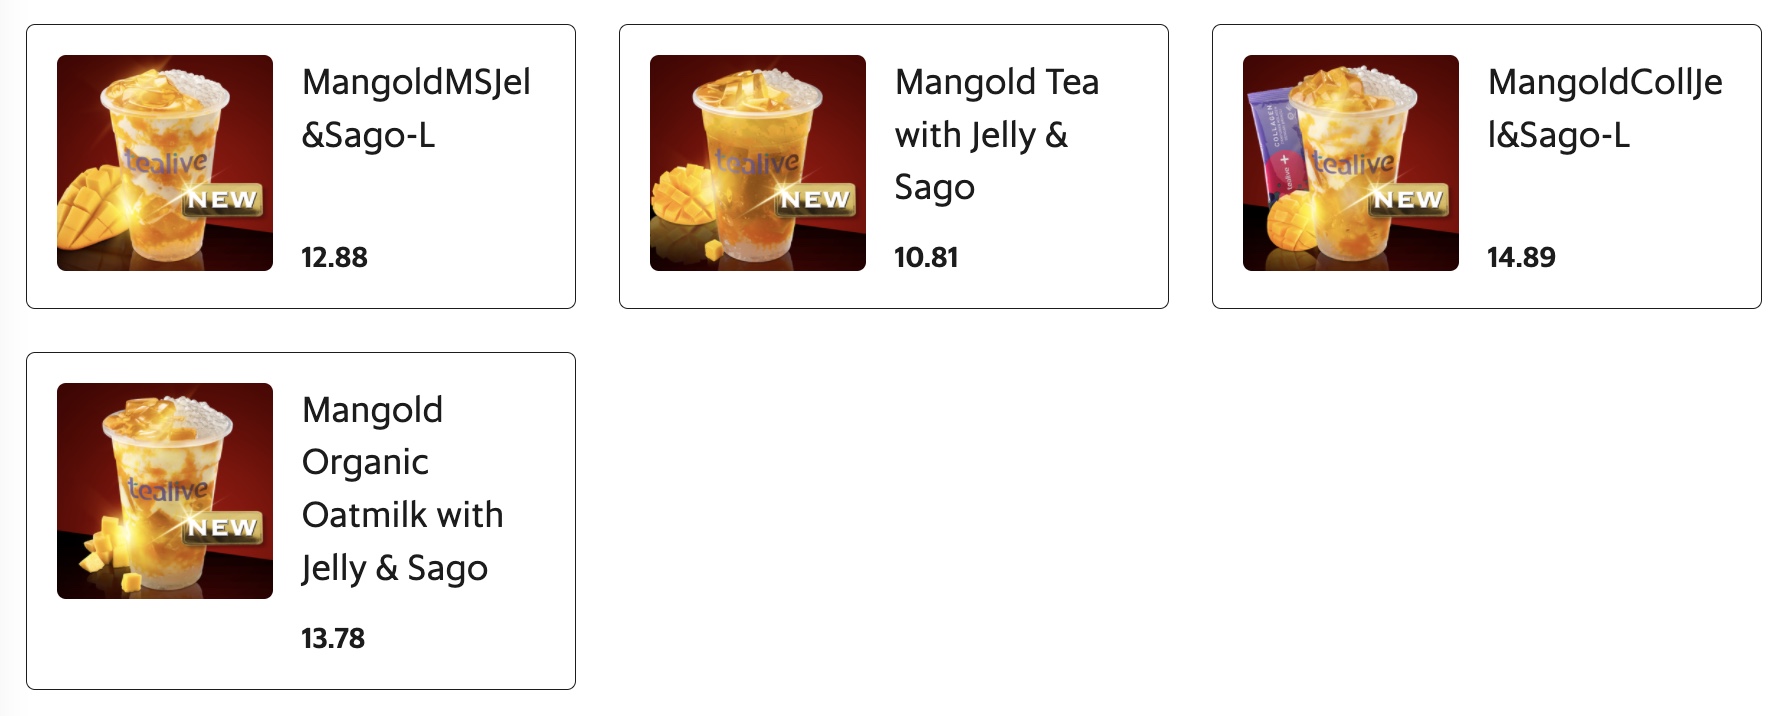 Mangold Menu Tealive Malaysia